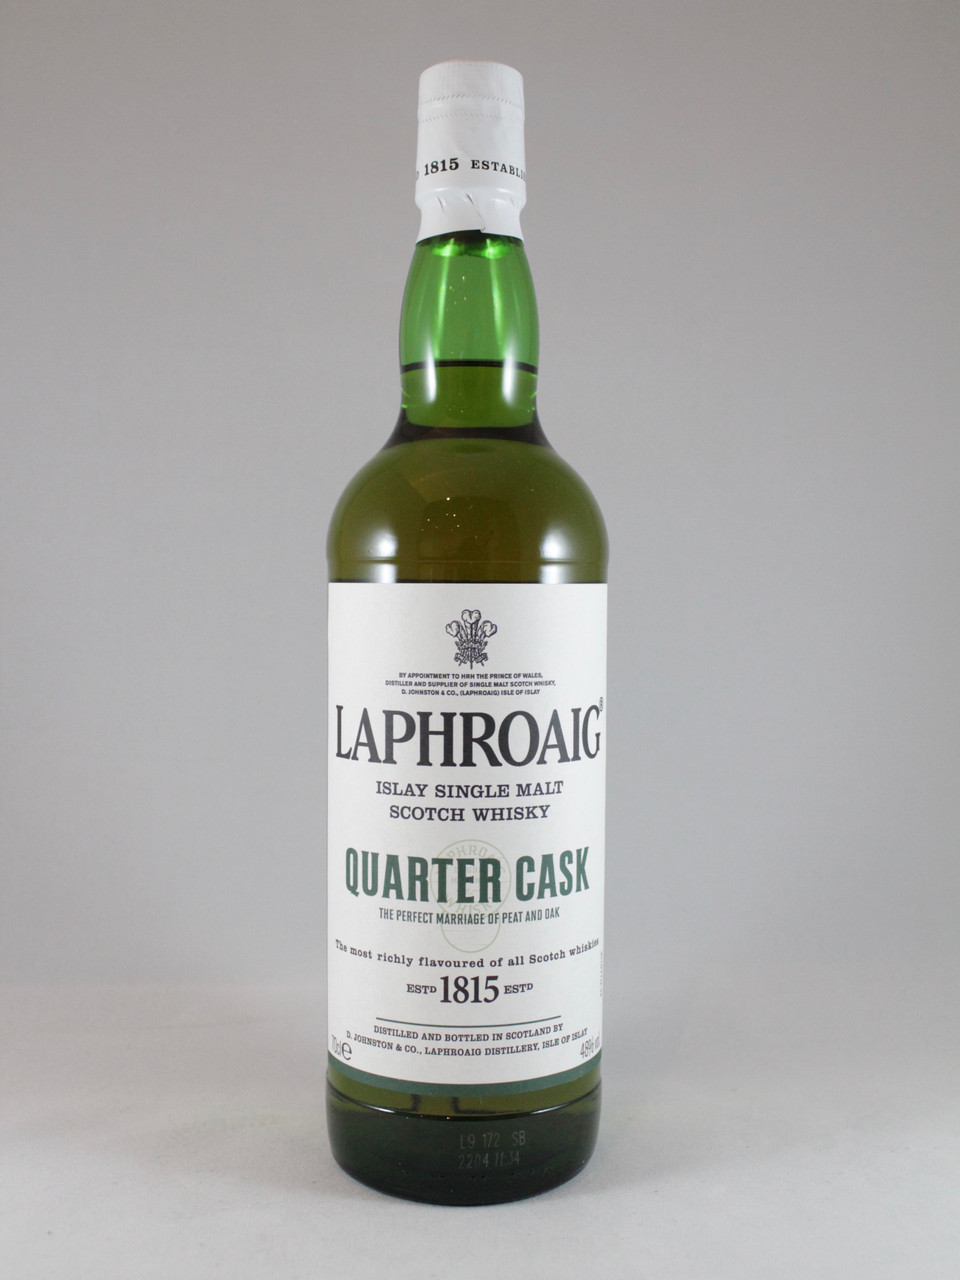 Laphroaig | Single Whisky Malt Scotch Islay Cask Quarter